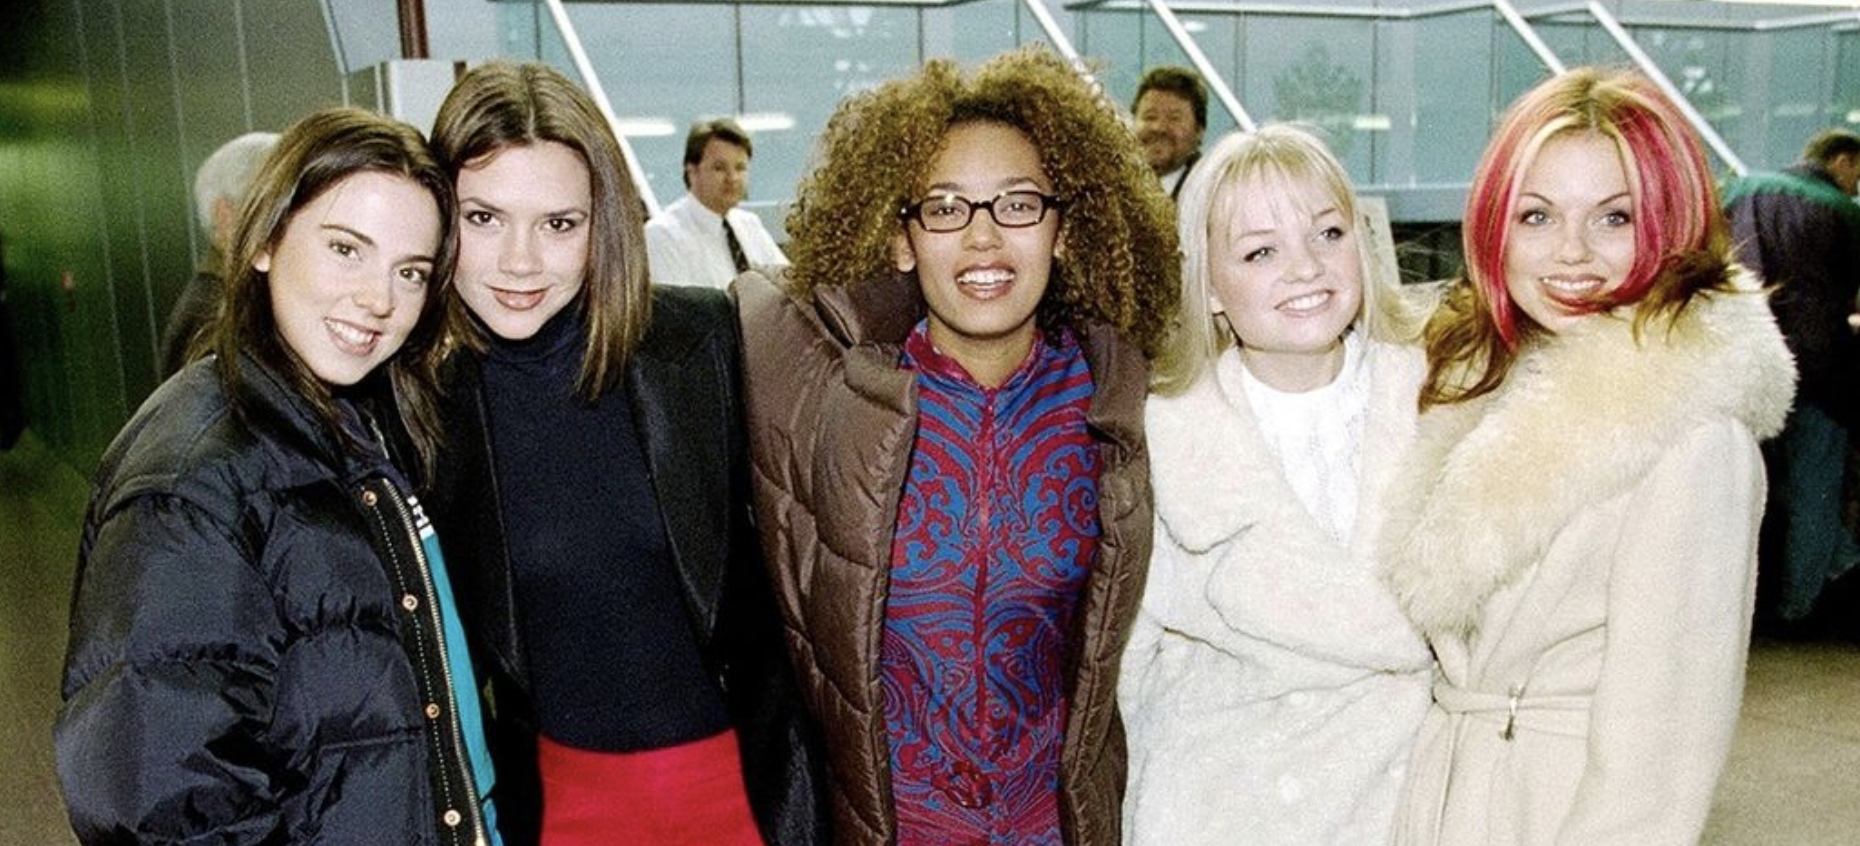 Spice Girls, la reunion ora è realtà: la conferma arriva da Mel B